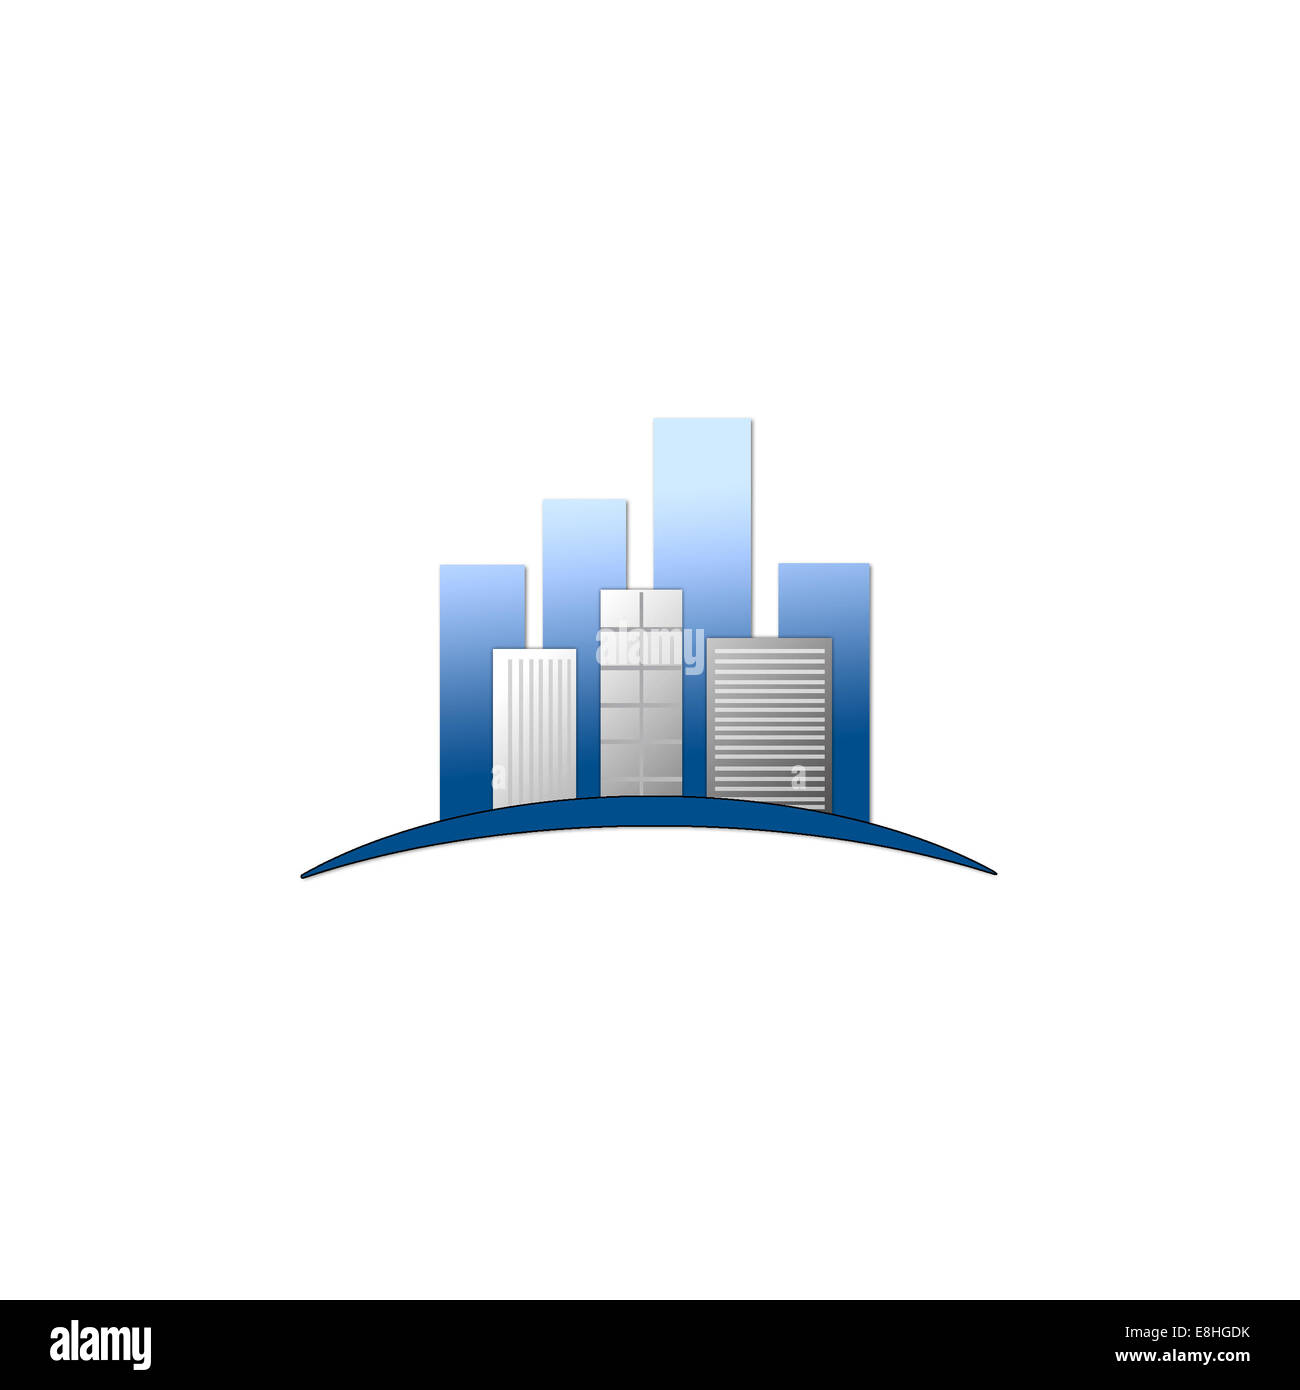 Real estate logo Stock Photo